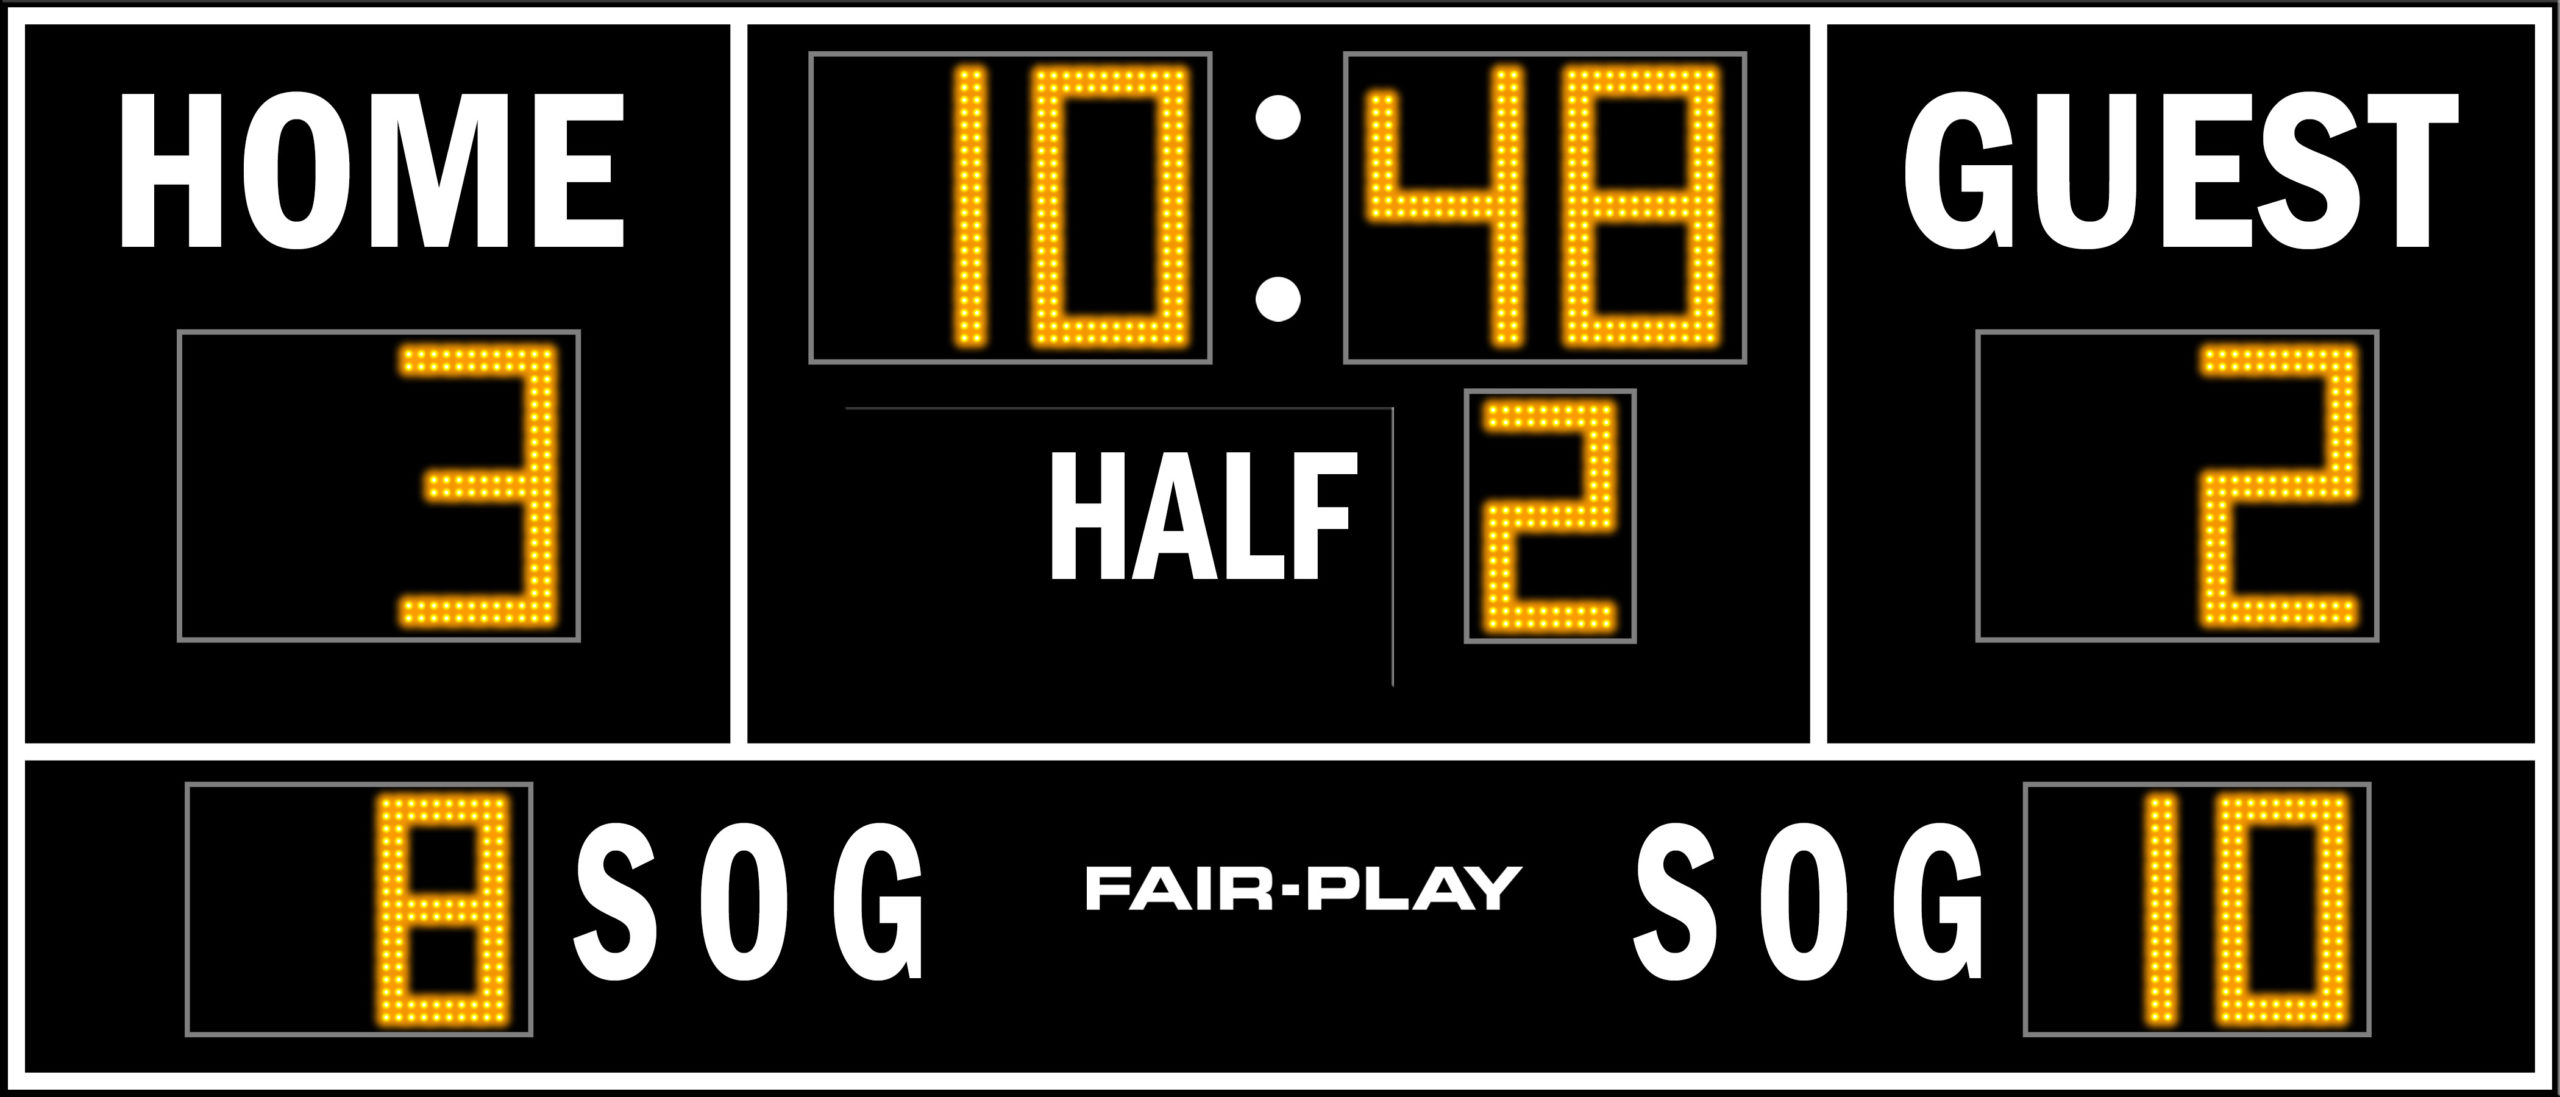 Sc 8114 2 Soccer Scoreboard Fair Play Scoreboards